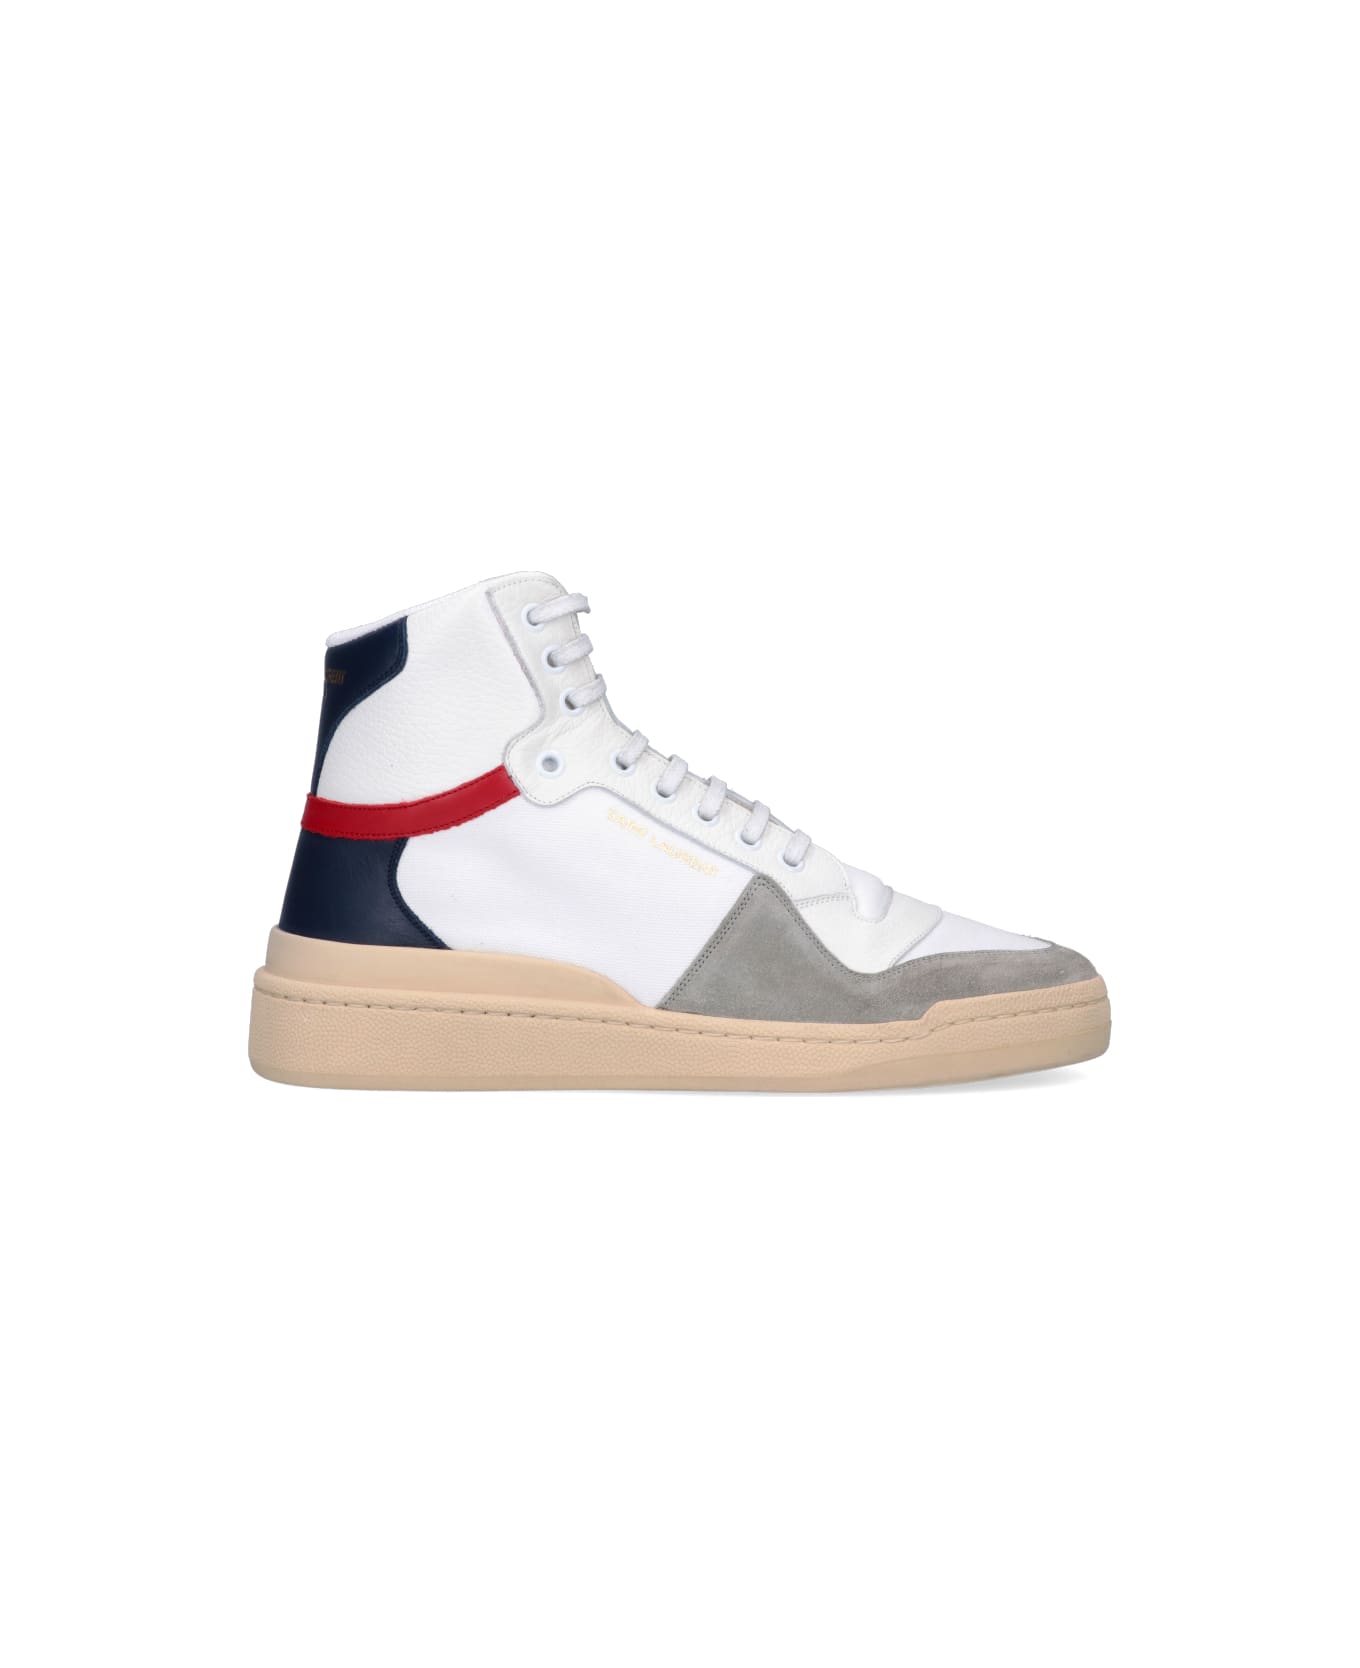 Saint Laurent Sneakers - White スニーカー